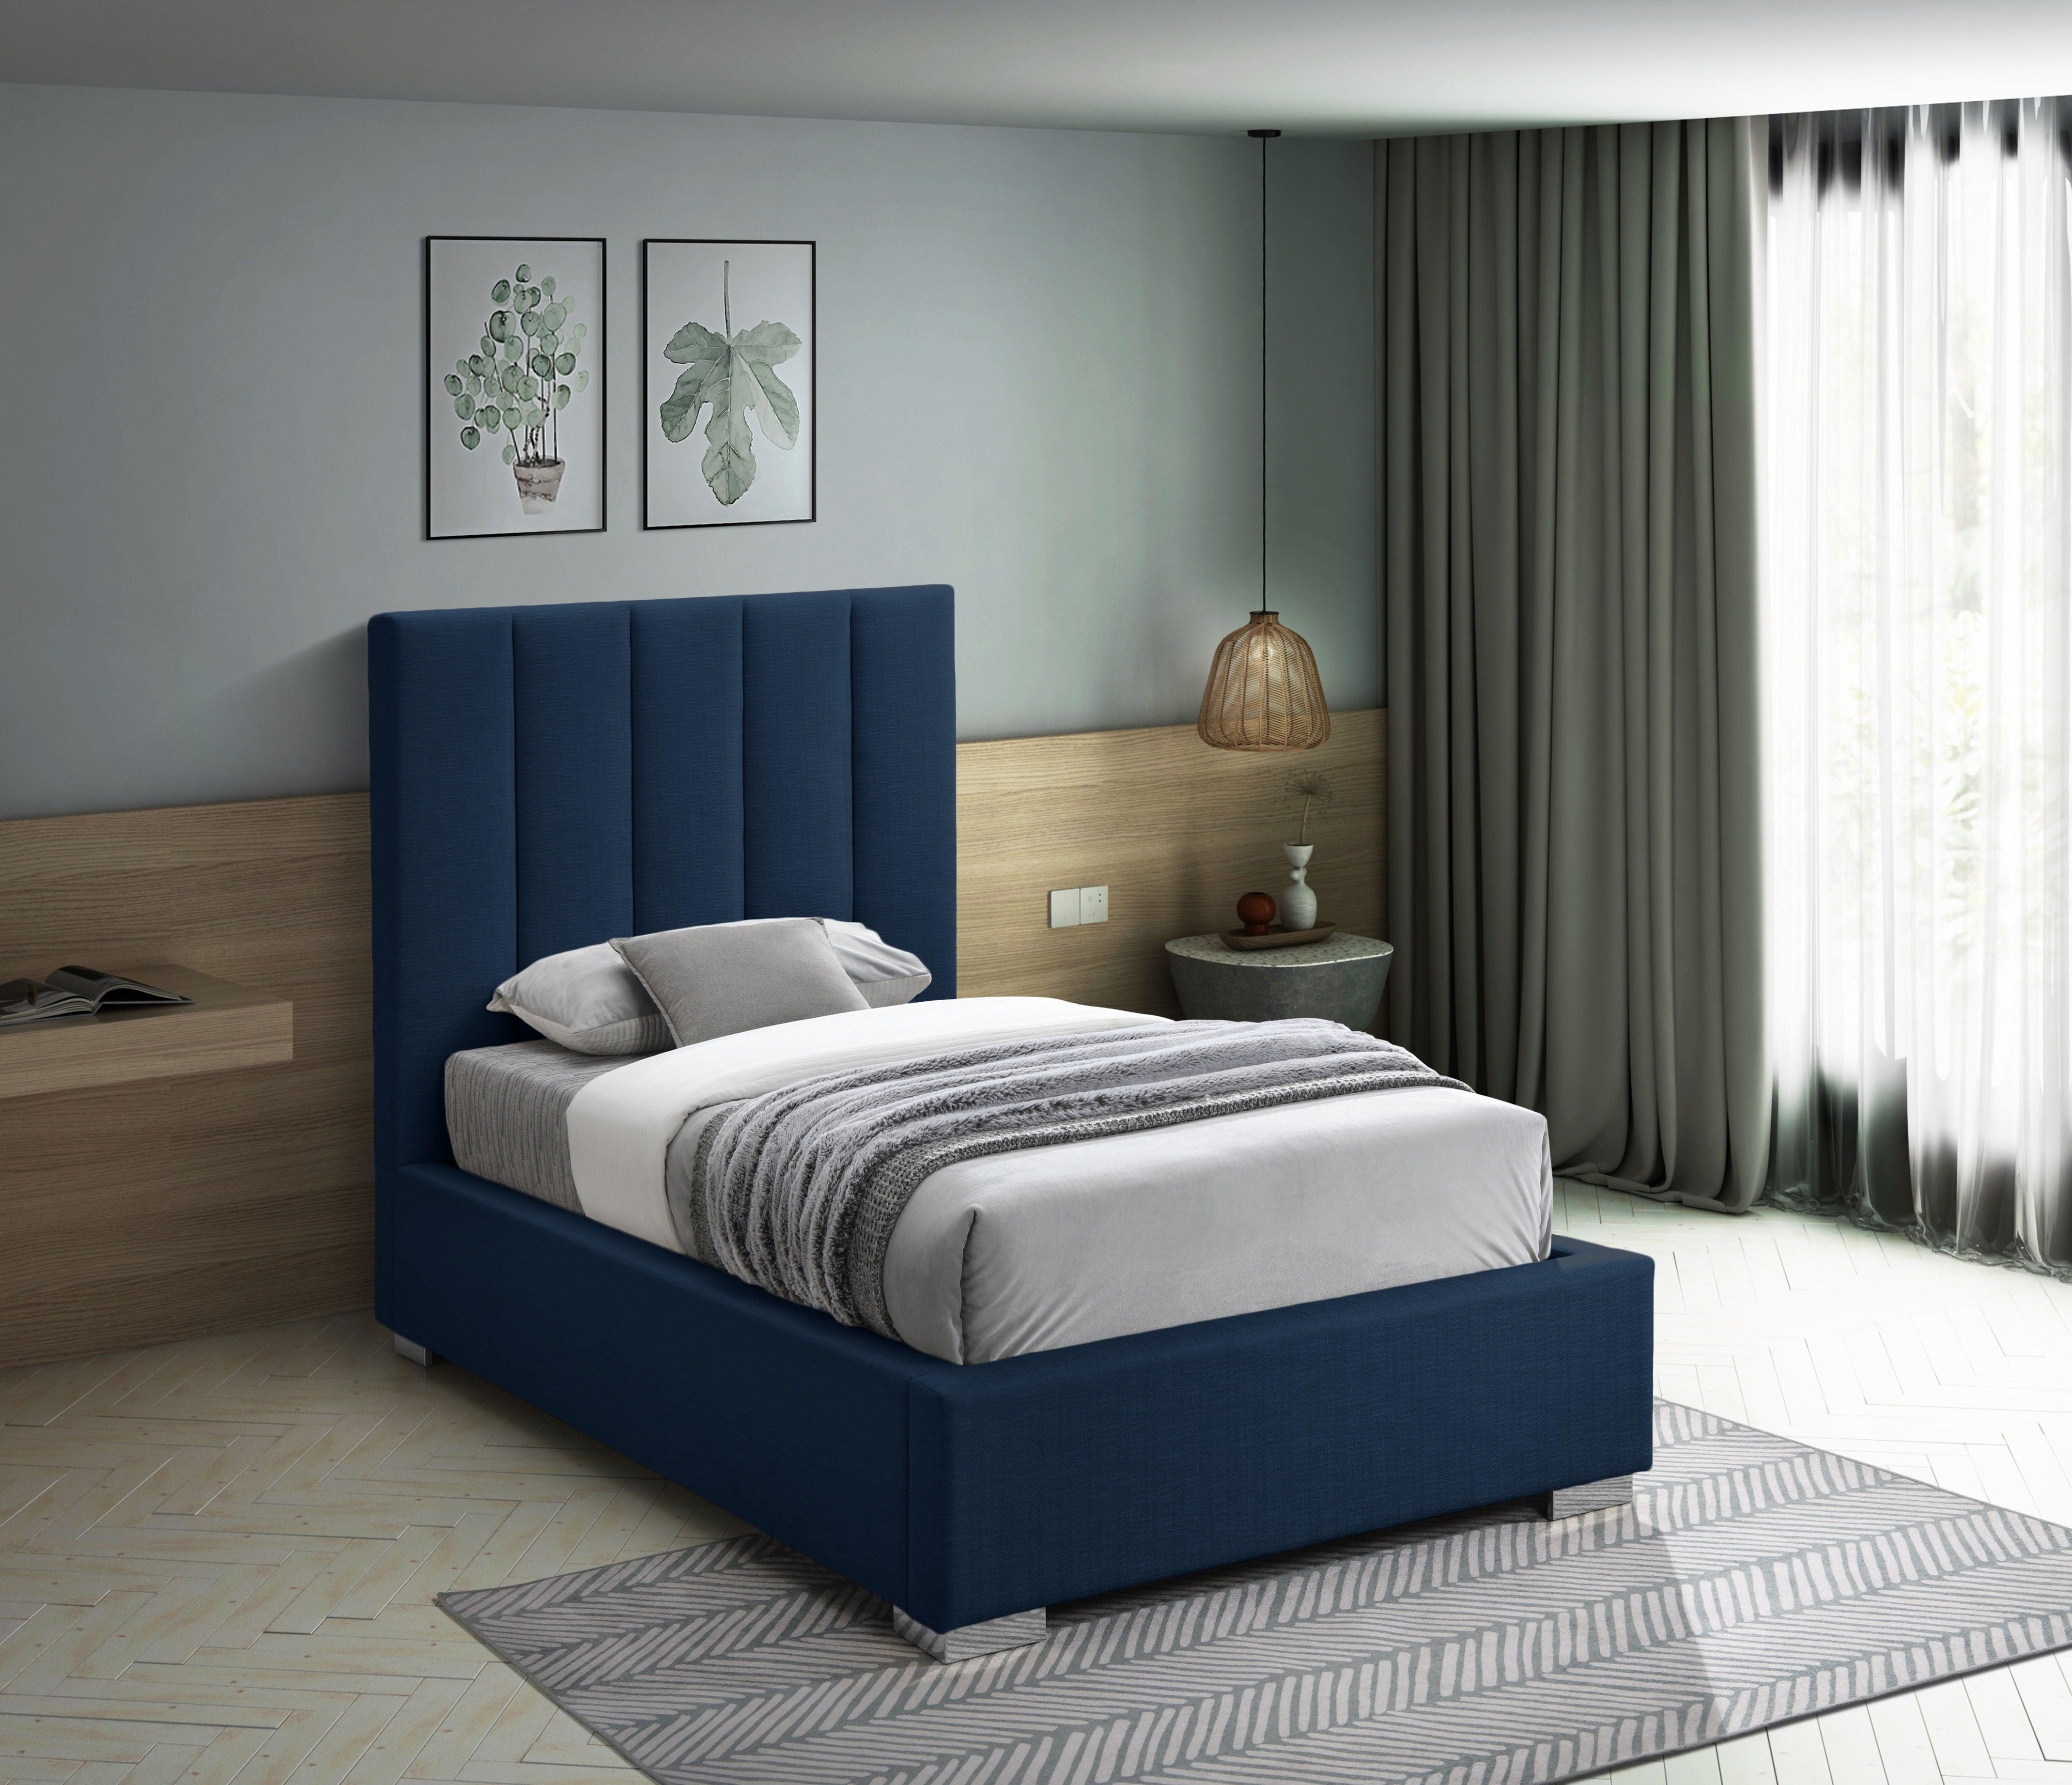 Meridian Furniture - Pierce - Bed - 5th Avenue Furniture